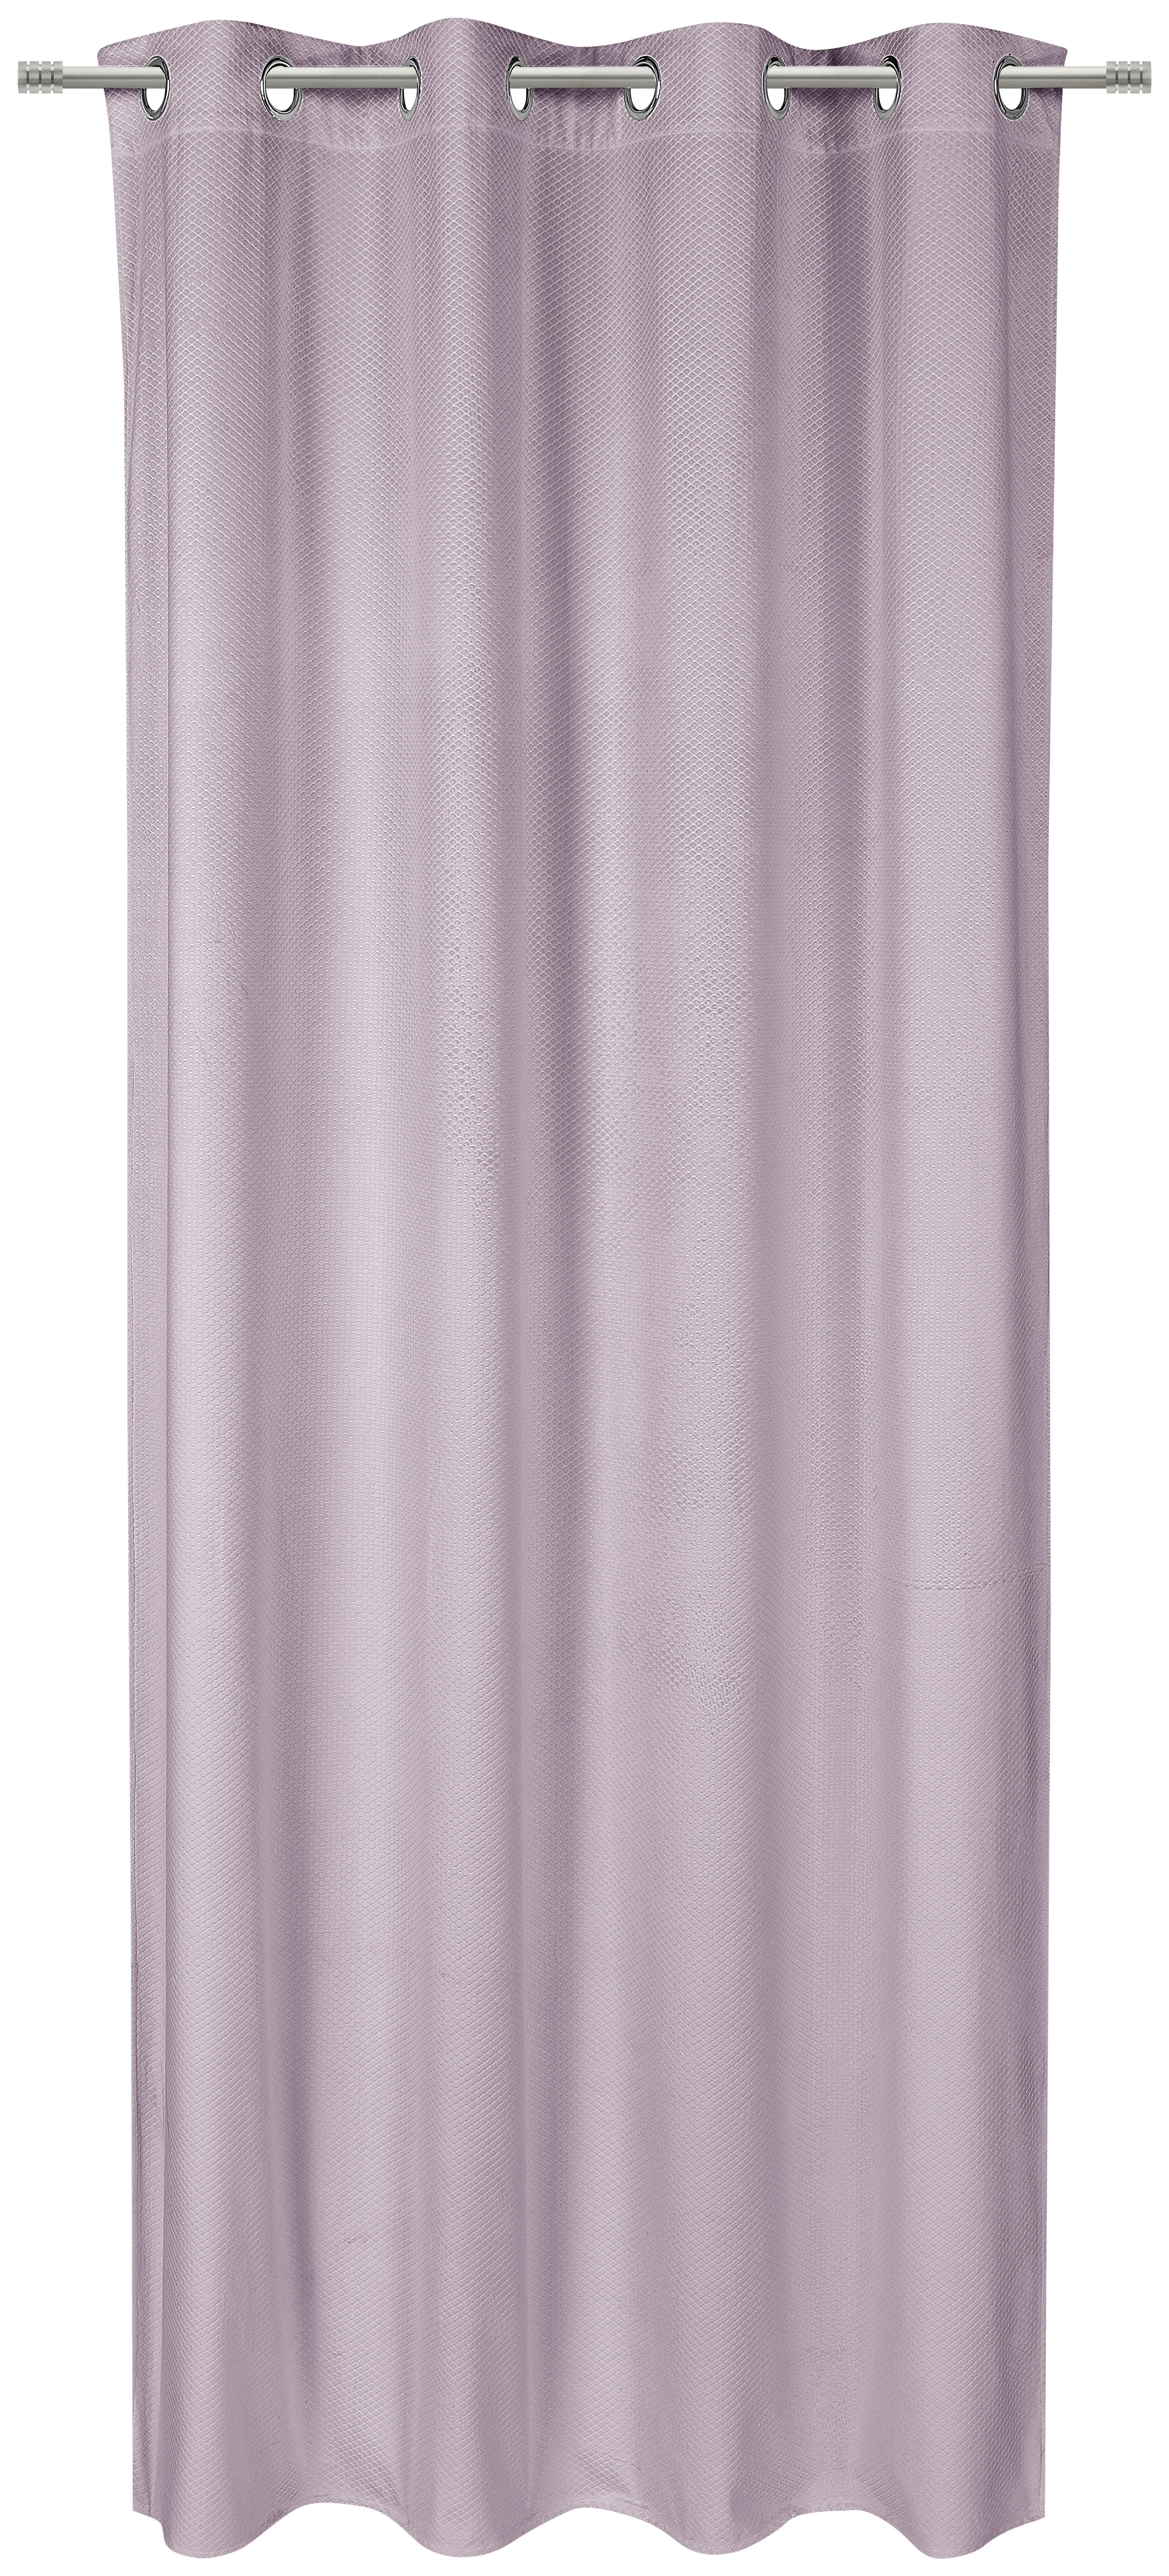 RINGLIS FÜGGÖNY Részben fényzáró  - Rózsaszín, Konventionell, Textil (140/245cm) - Esposa